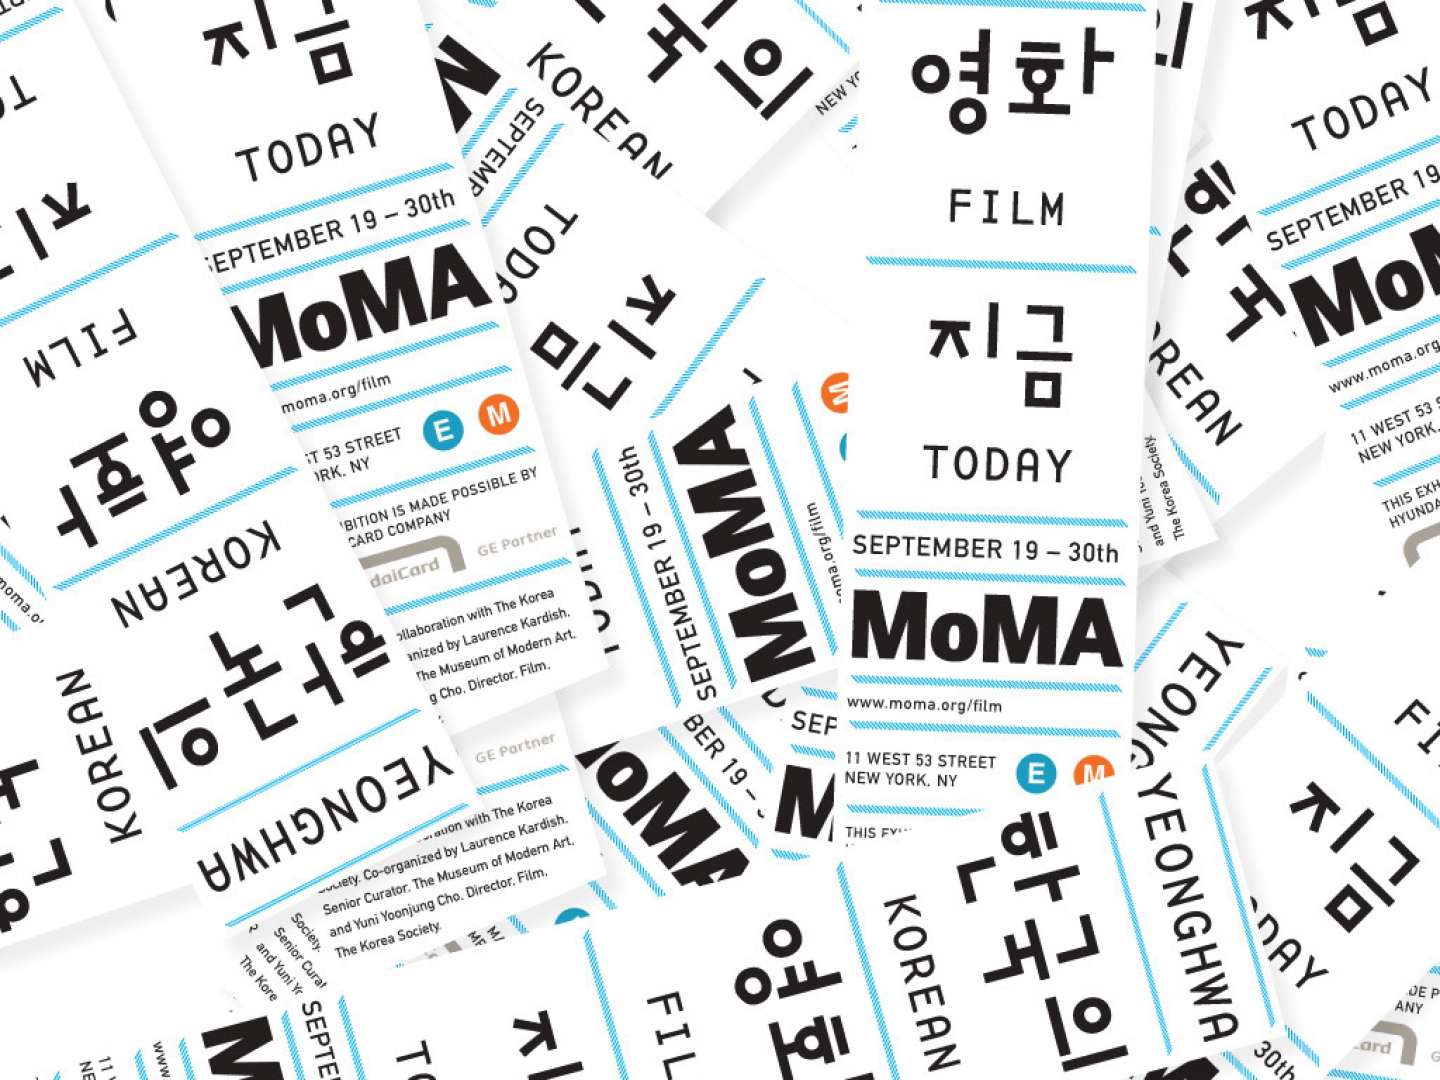 Yeongwa Korean Film Today